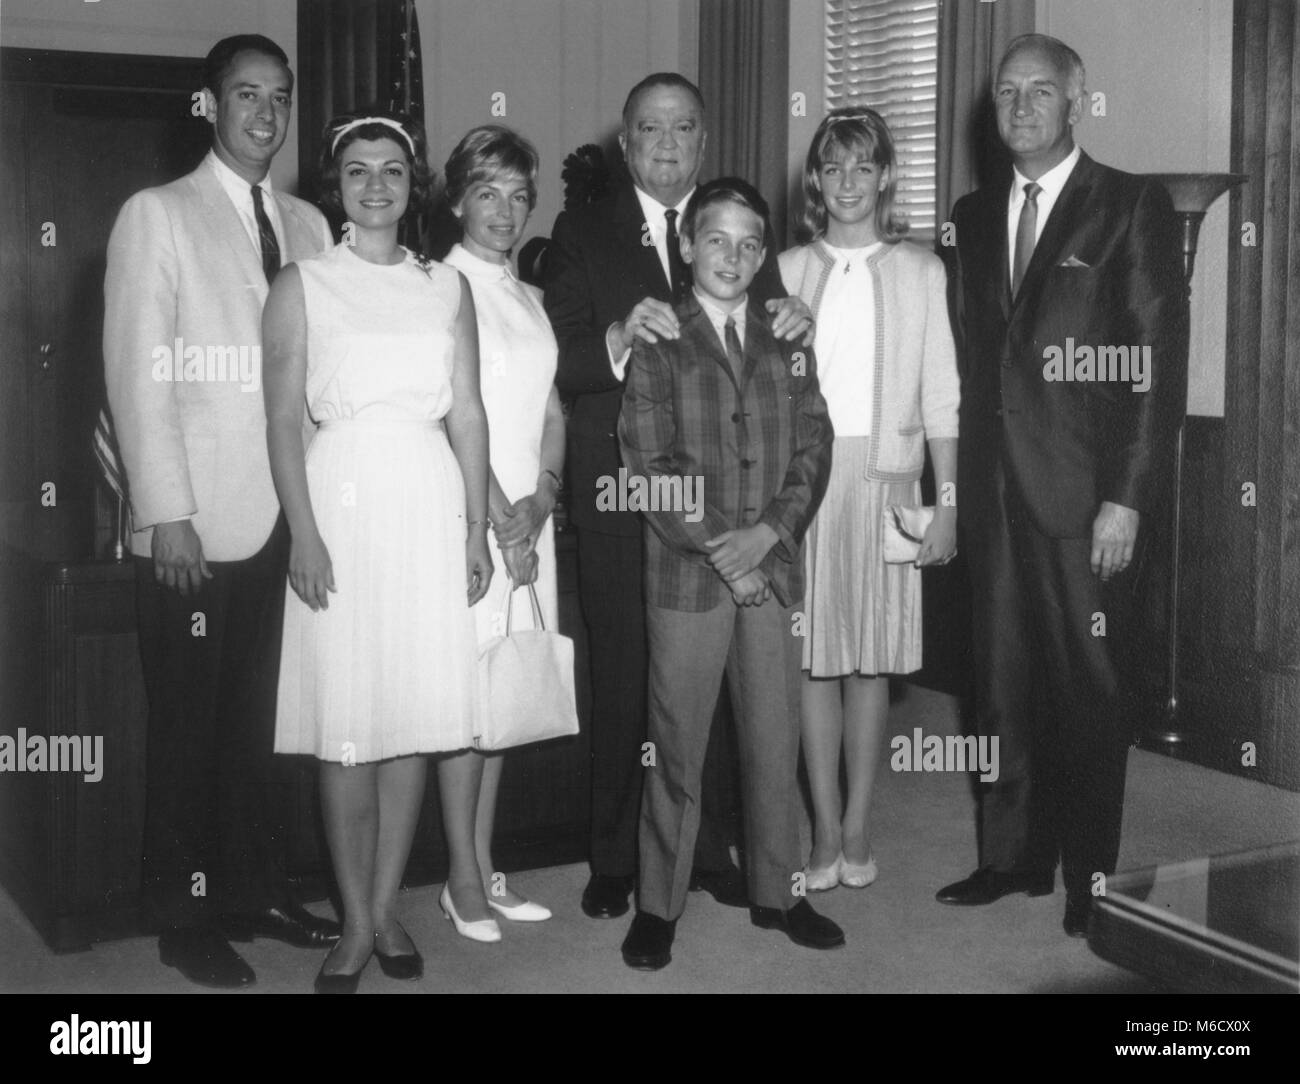 Le Directeur du FBI, J. Edgar Hoover a été photographié avec ABC hockey Tom Harmon, ABC écrivain Robert Sizer et leurs familles. Indiqué dans le bureau de M. Hoover étaient : M. Sizer, Mme Sizer, Mme Harmon, M. Hoover, Mark Harmon, Kelly Harmon et M. Harmon. Washington, DC, le 18 juin 1964. Banque D'Images